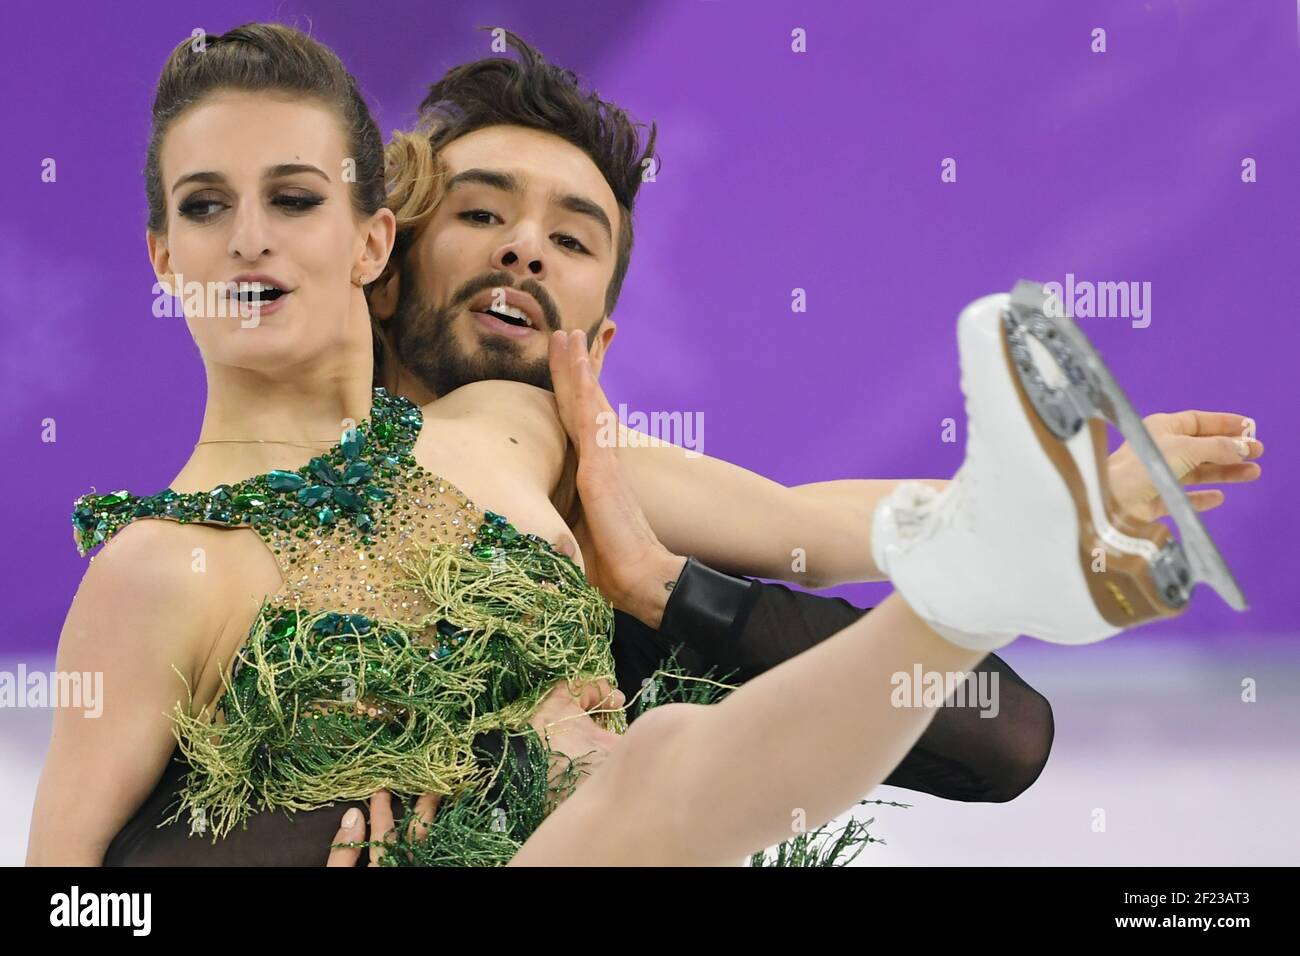 Gabriella Papadakis (sa robe est défaite et révèle son bosom) et Guillaume  Cizeron lors de la XXIII Jeux Olympiques d'hiver Pyeongchang 2018,  Programme court de patinage artistique, danse sur glace, le 19